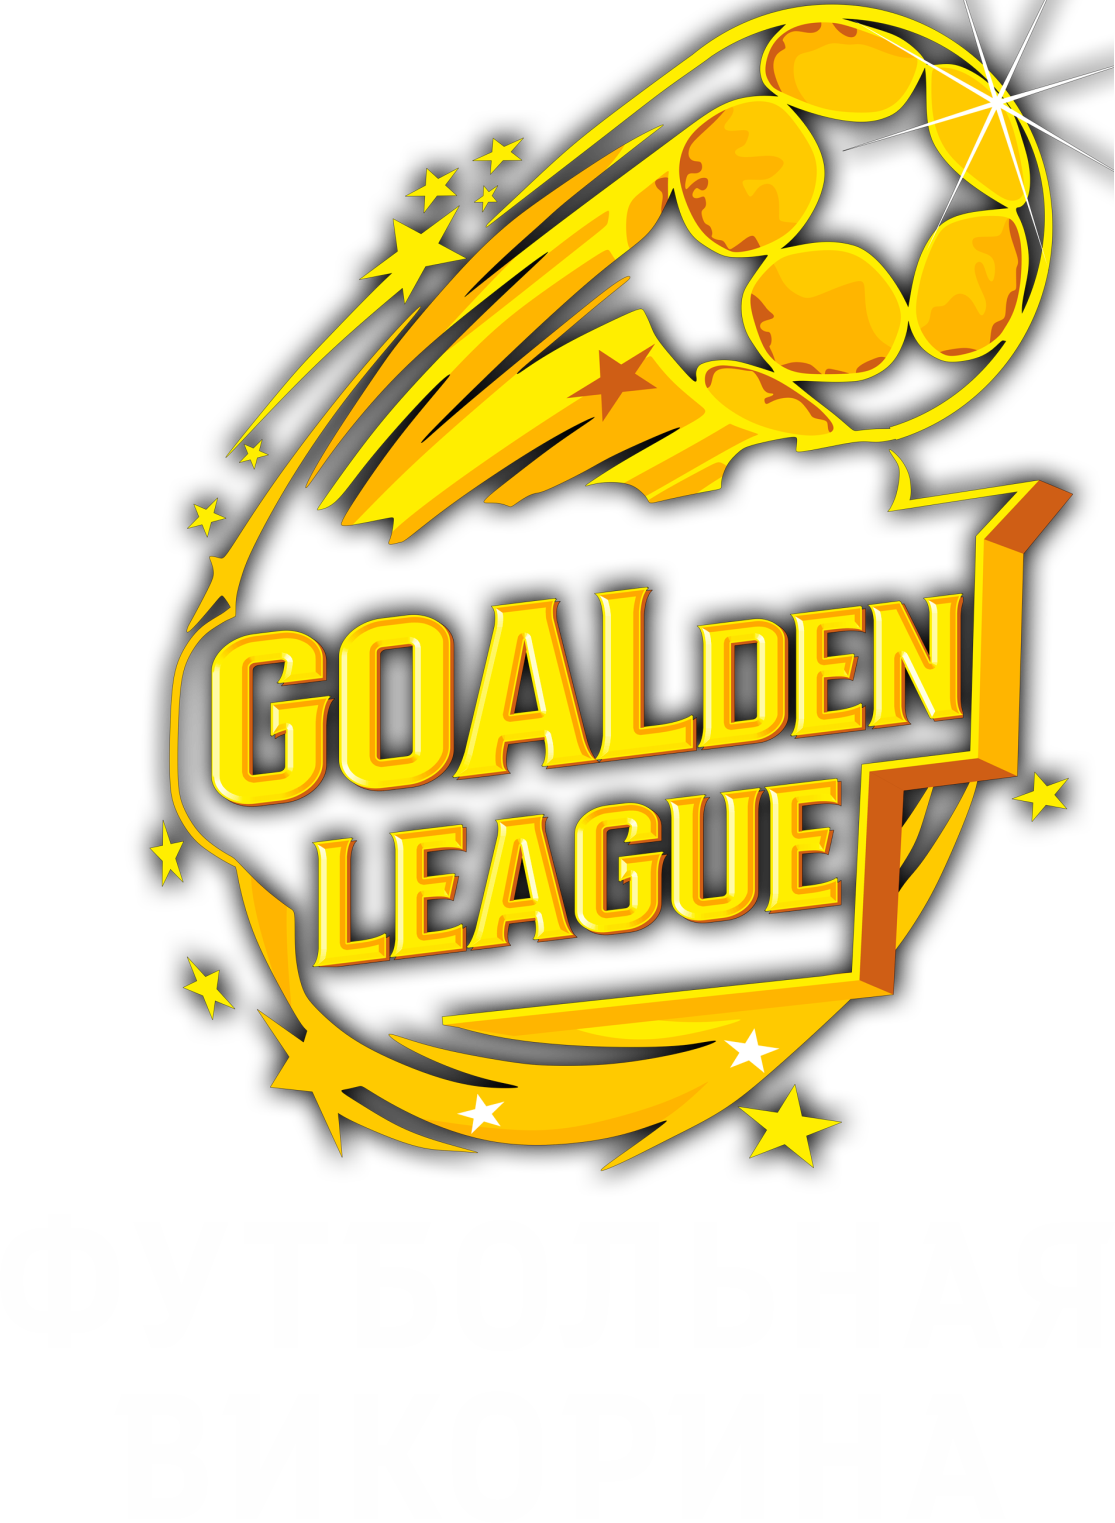 Goalden League